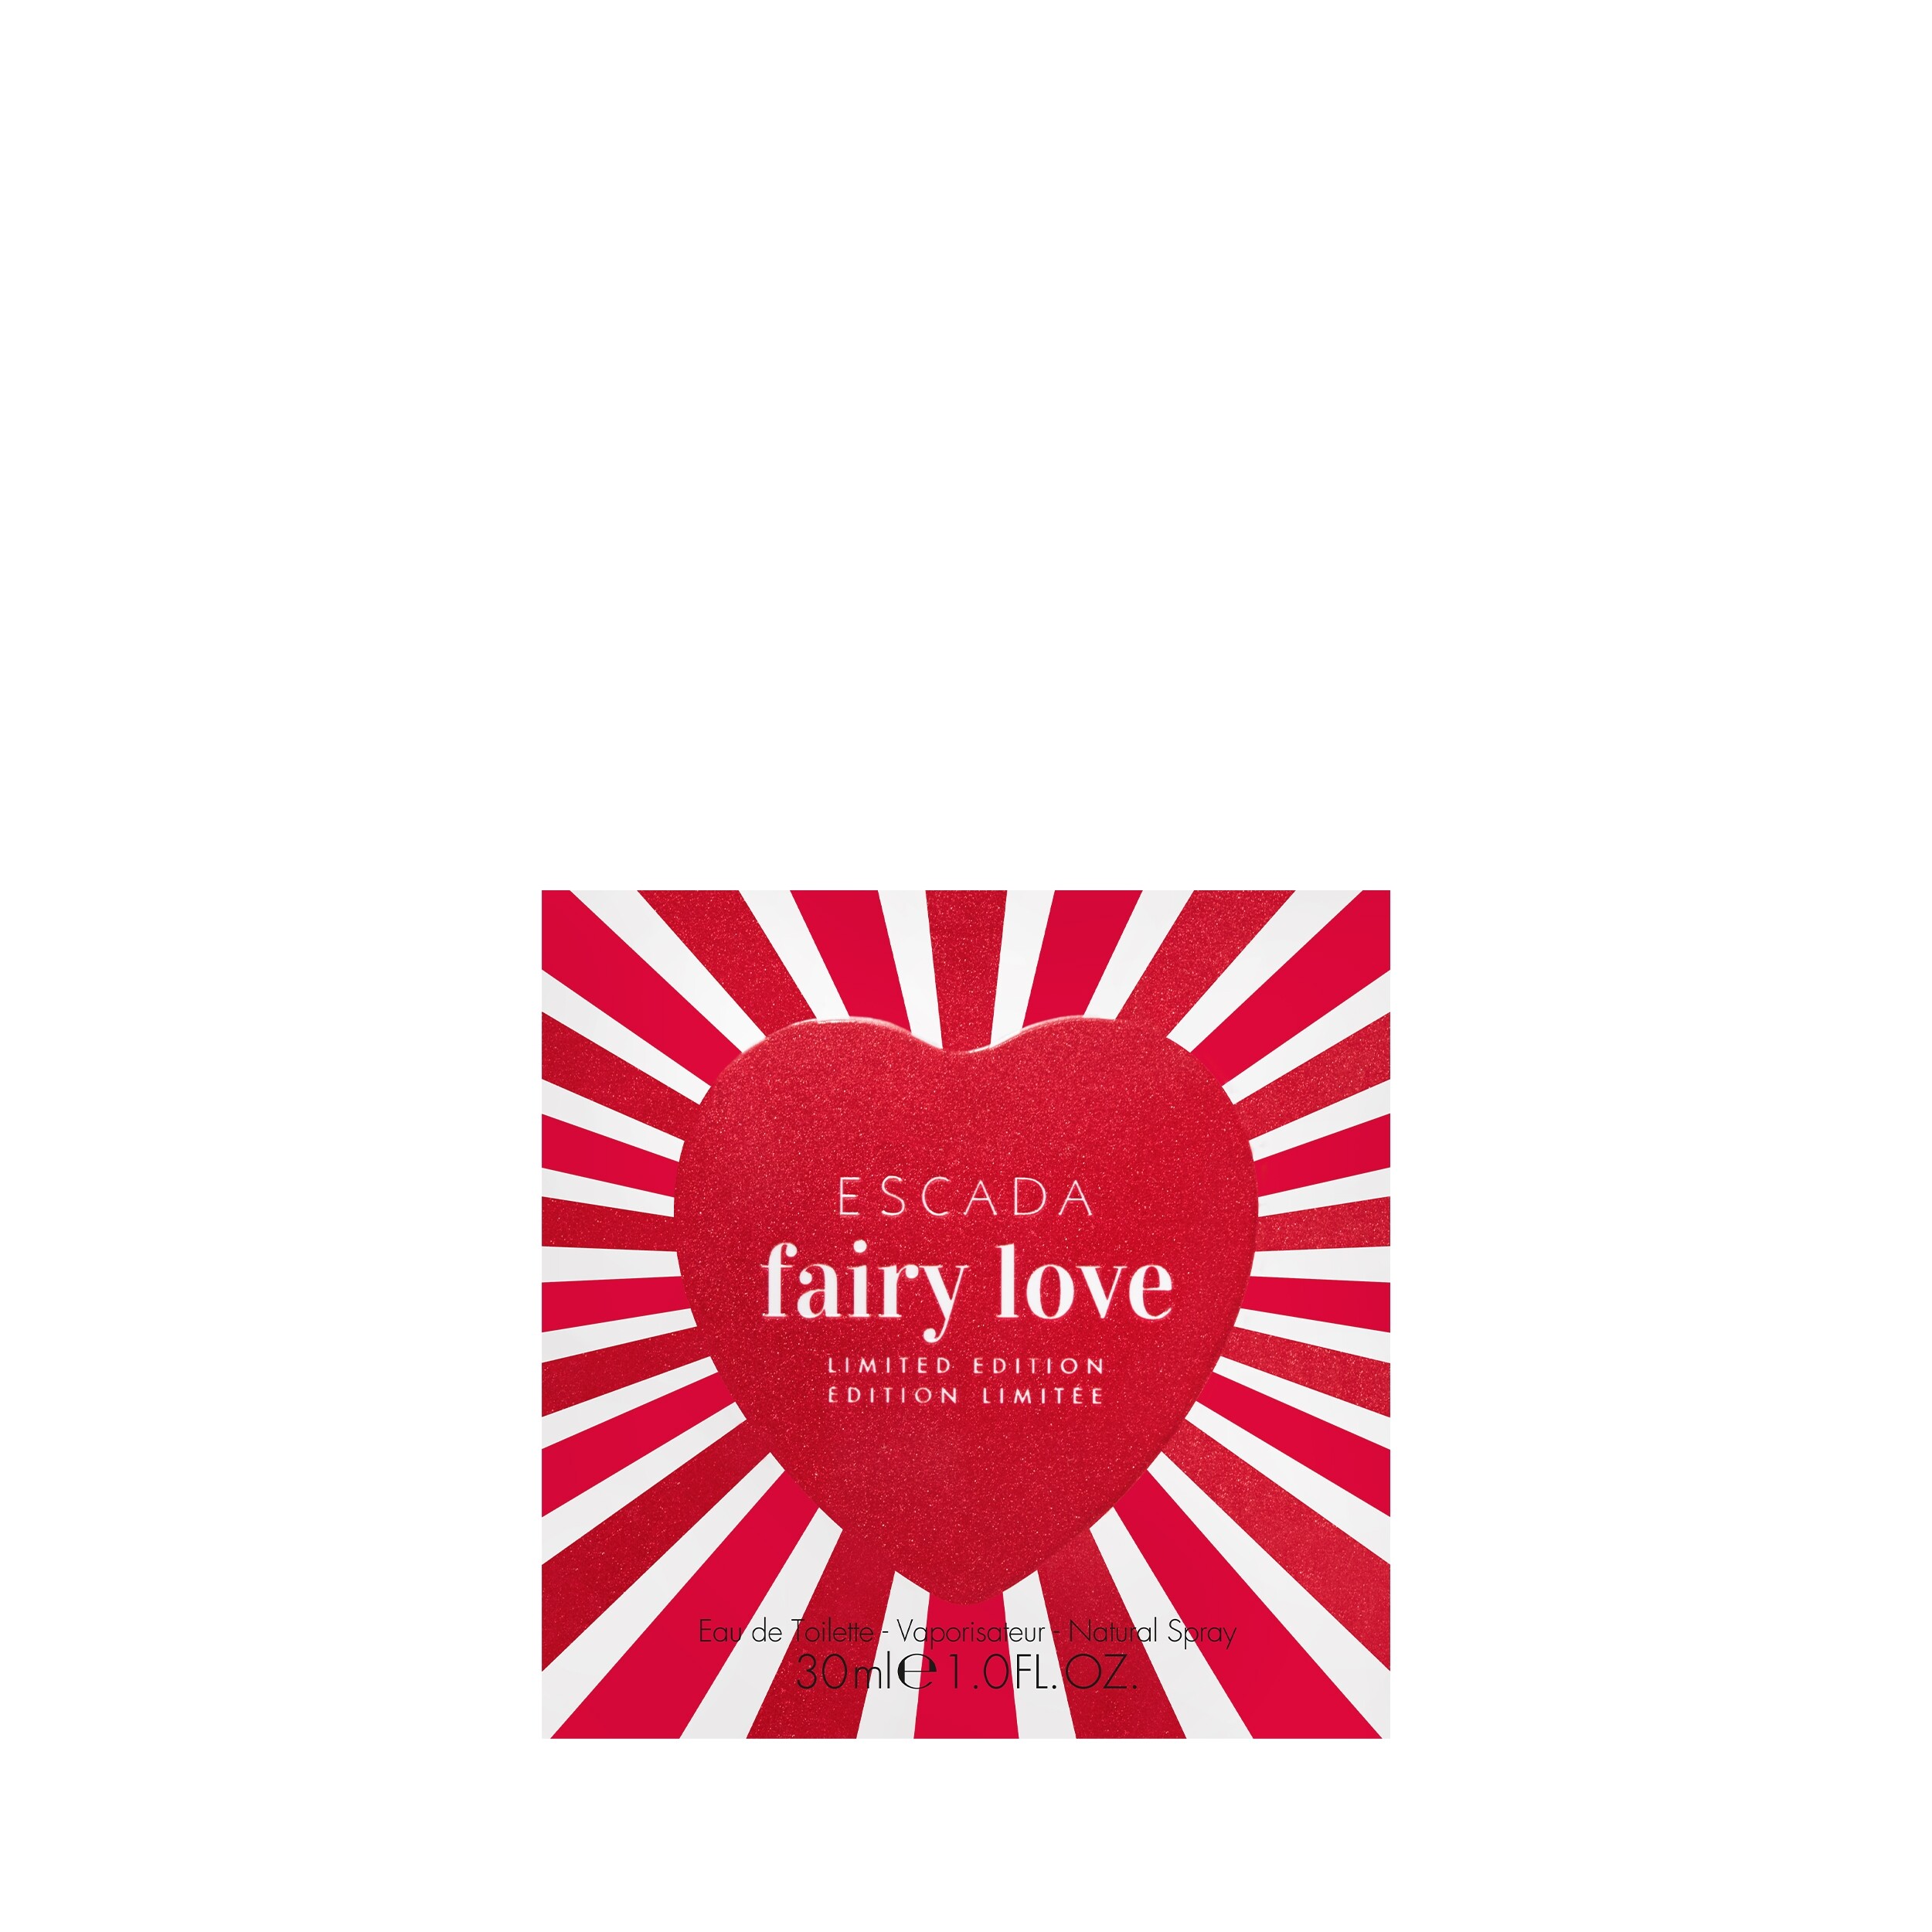 Parfum Escada Fairy Love EDT Limited Edition bestellen